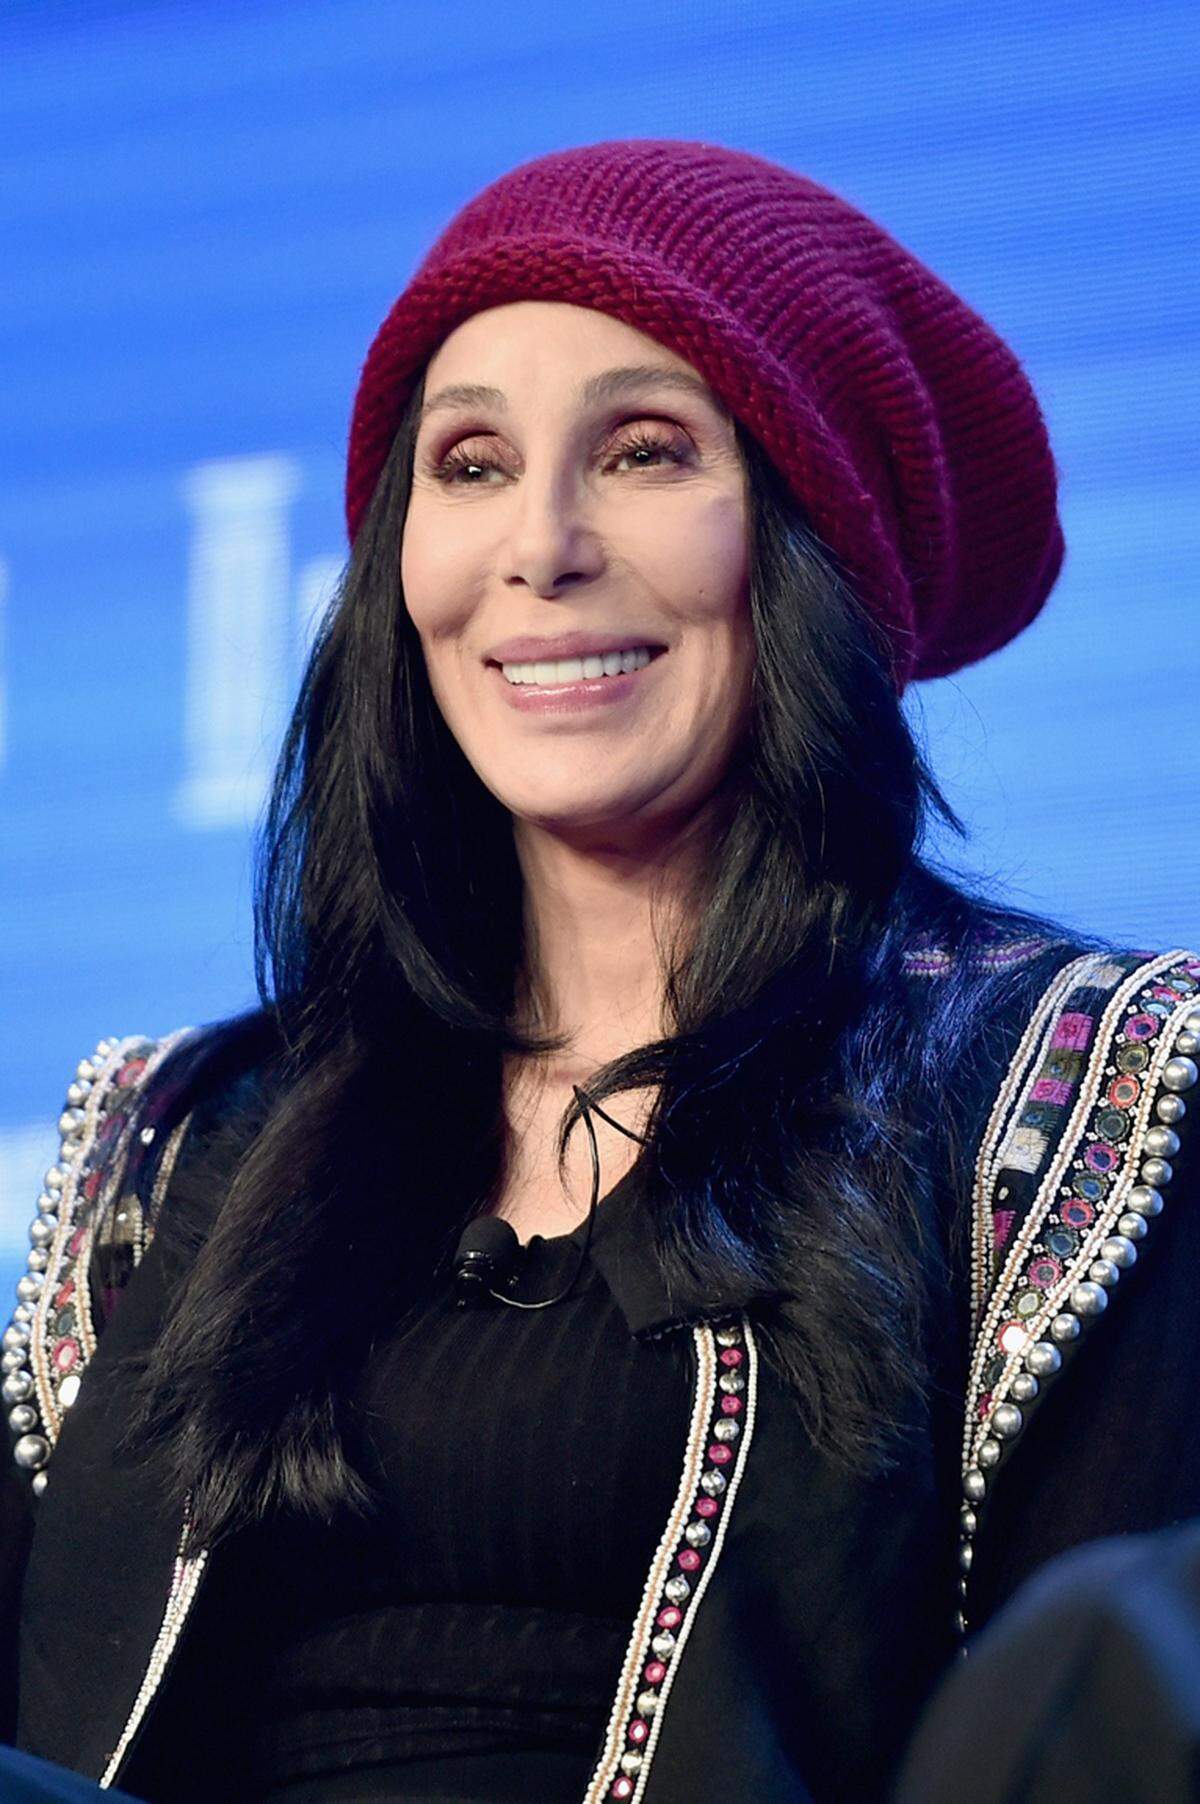 Als Befürworterin von Schönheits-OPs gilt auch Cher. Nach der Geburt ihrer Tochter unterzog sie sich einer Brustvergrößerung, mit der sie allerdings nicht zufrieden war, wie sie "People" 1992 erzählte: "Sie waren wirklich in jeder Hinsicht verpfuscht. Im Gegenteil, sie waren sogar schlimmer als zuvor."